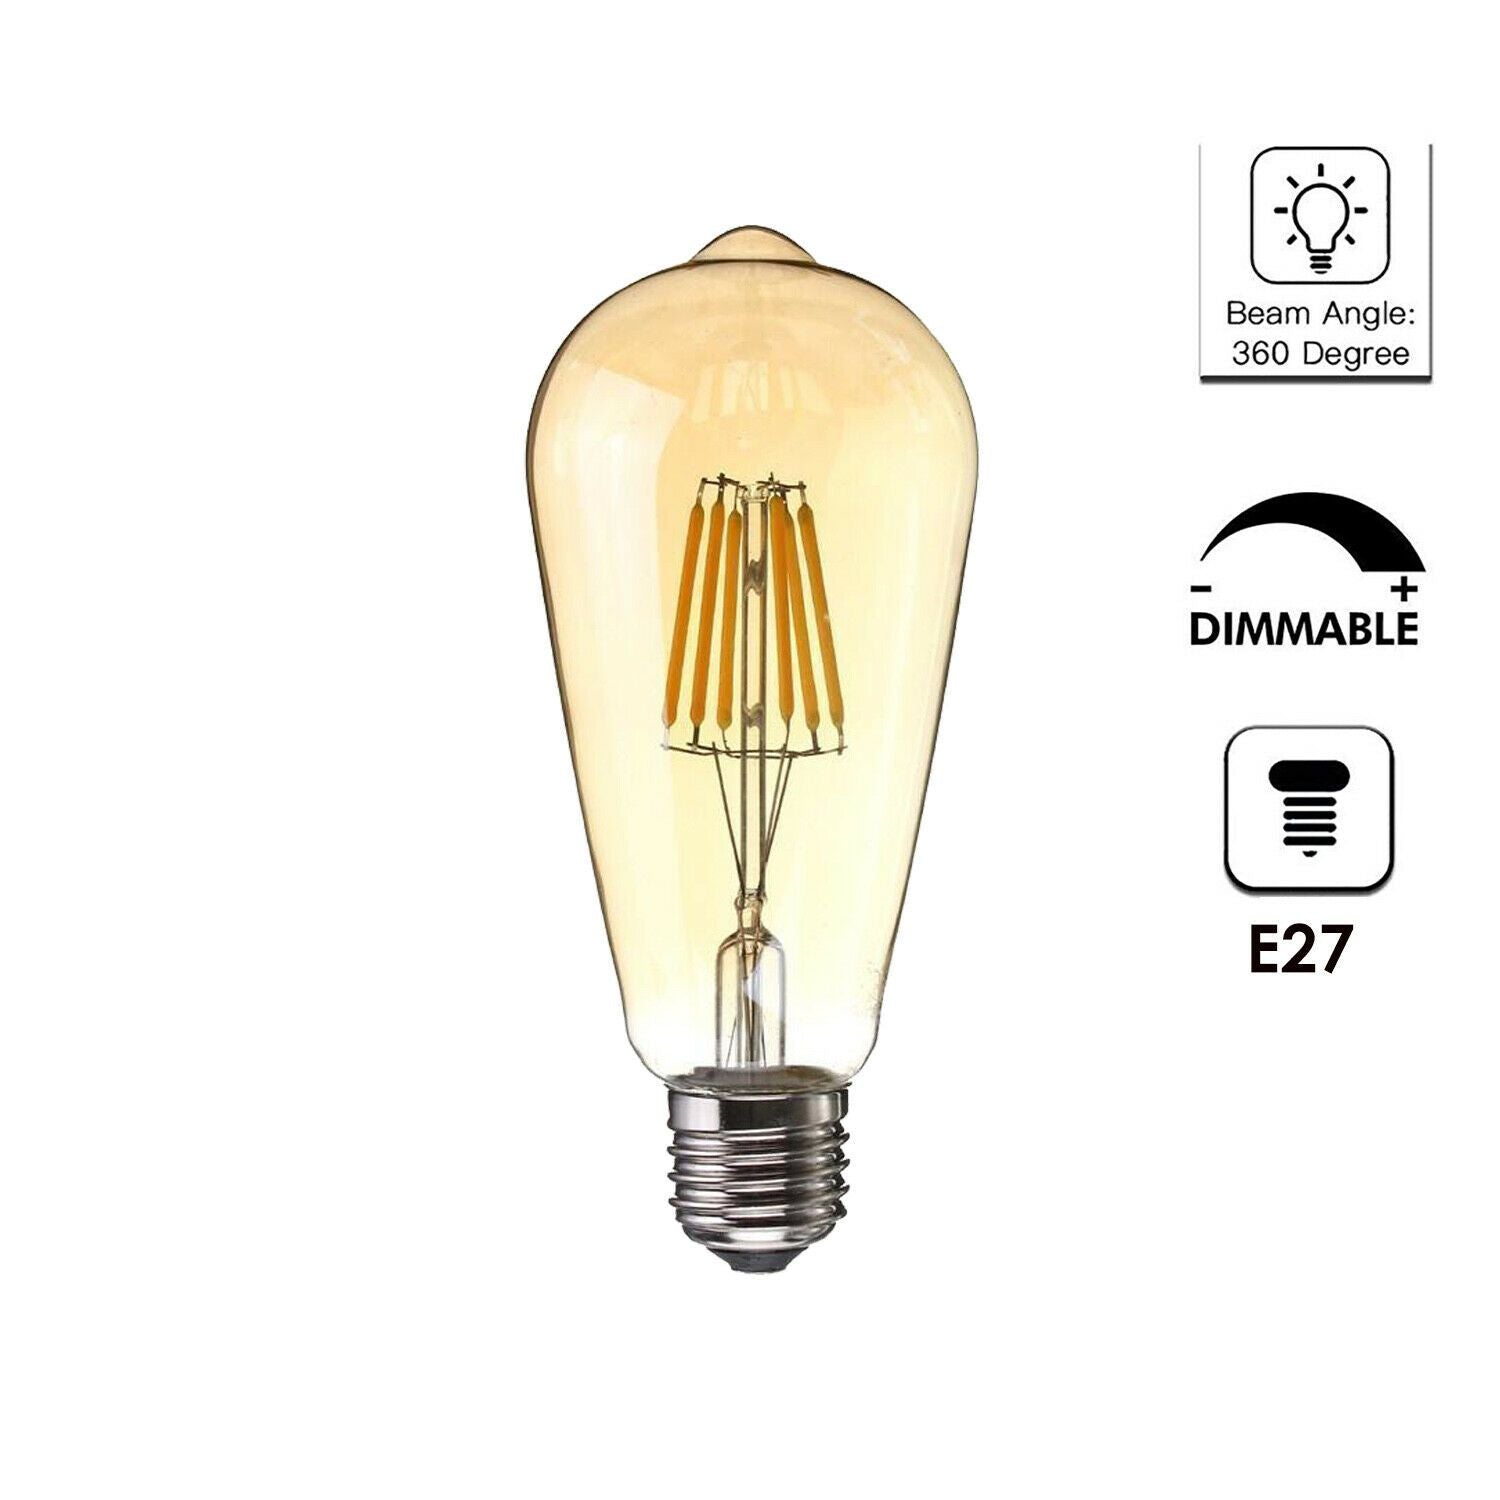 6 Pack E27 Vintage Industrial LED Bulb